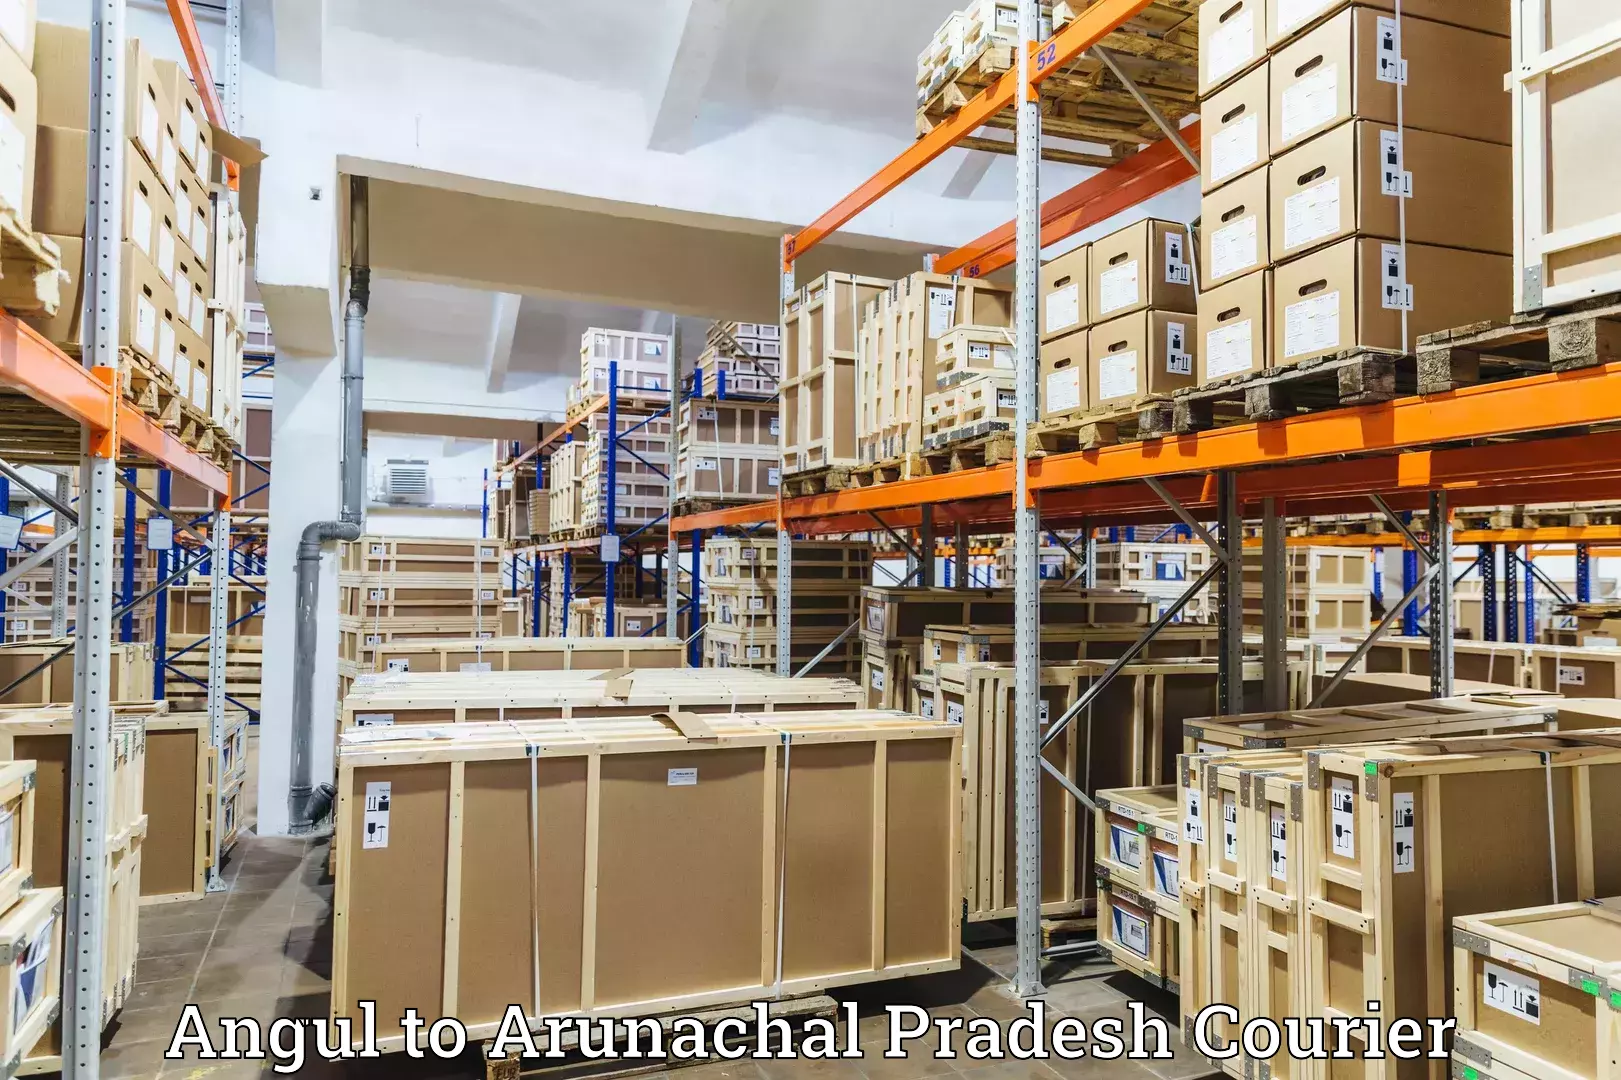 Nationwide shipping capabilities Angul to Arunachal Pradesh